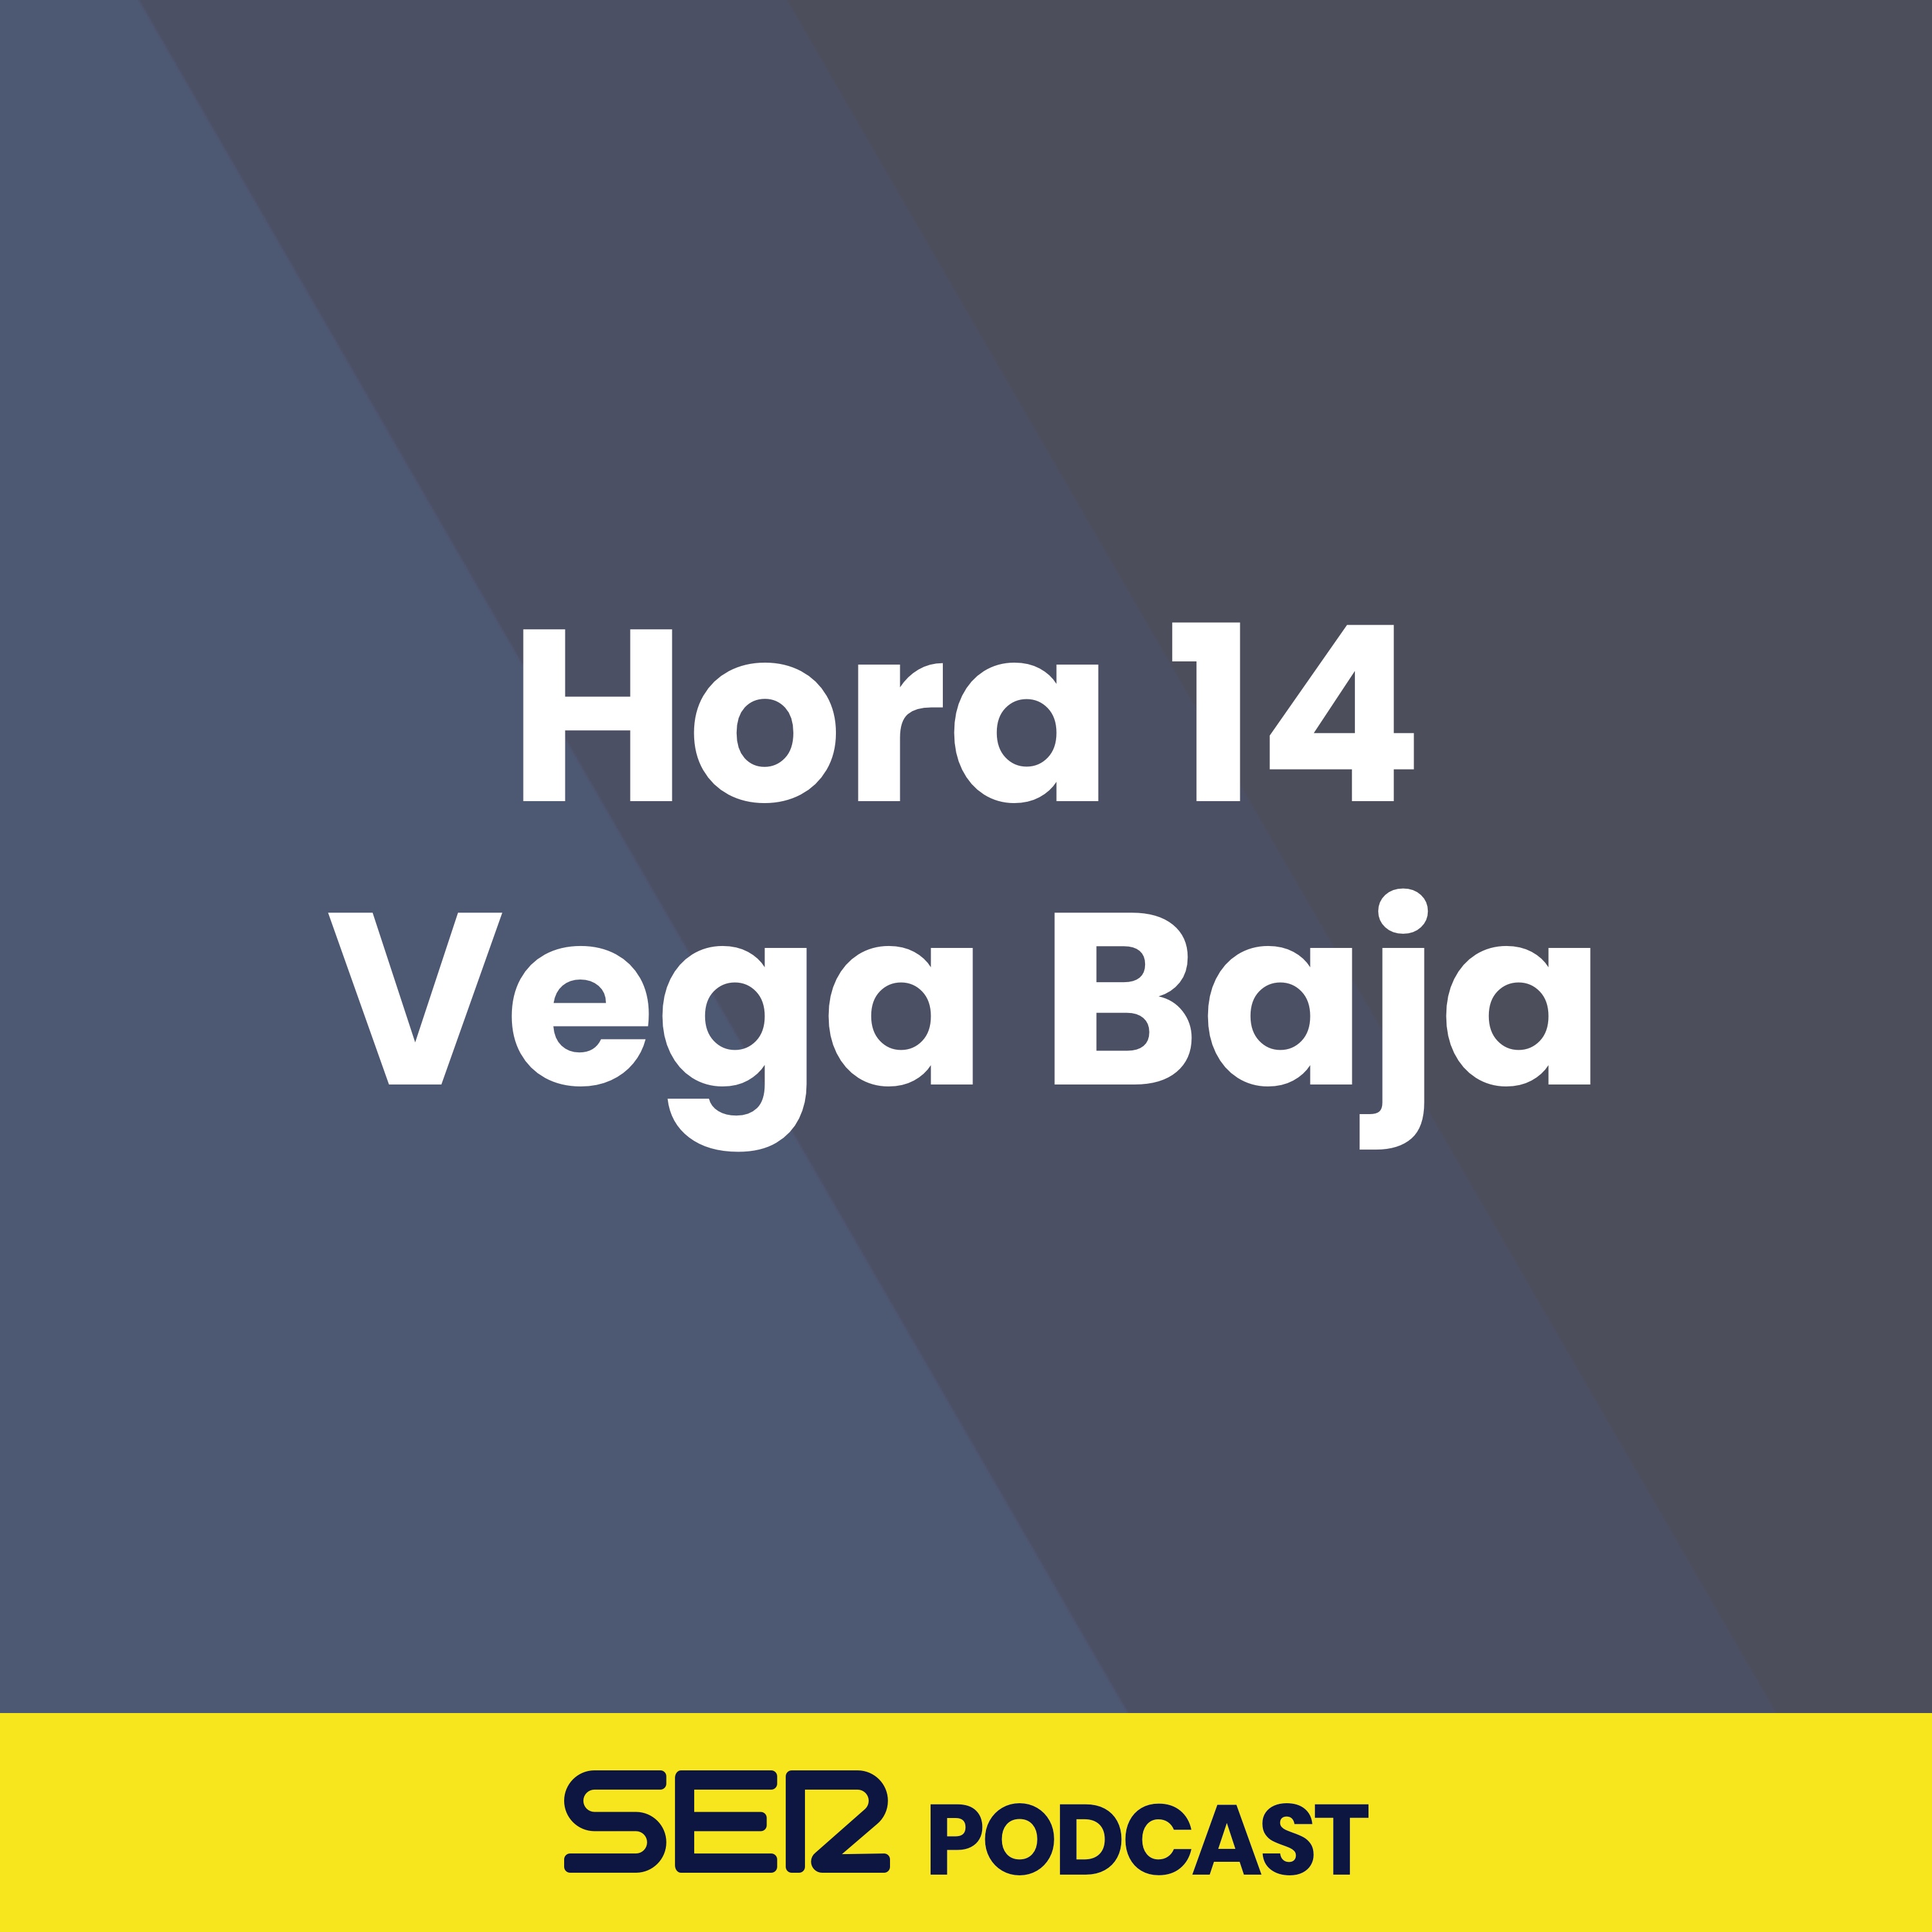 Hora 14 Vega Baja